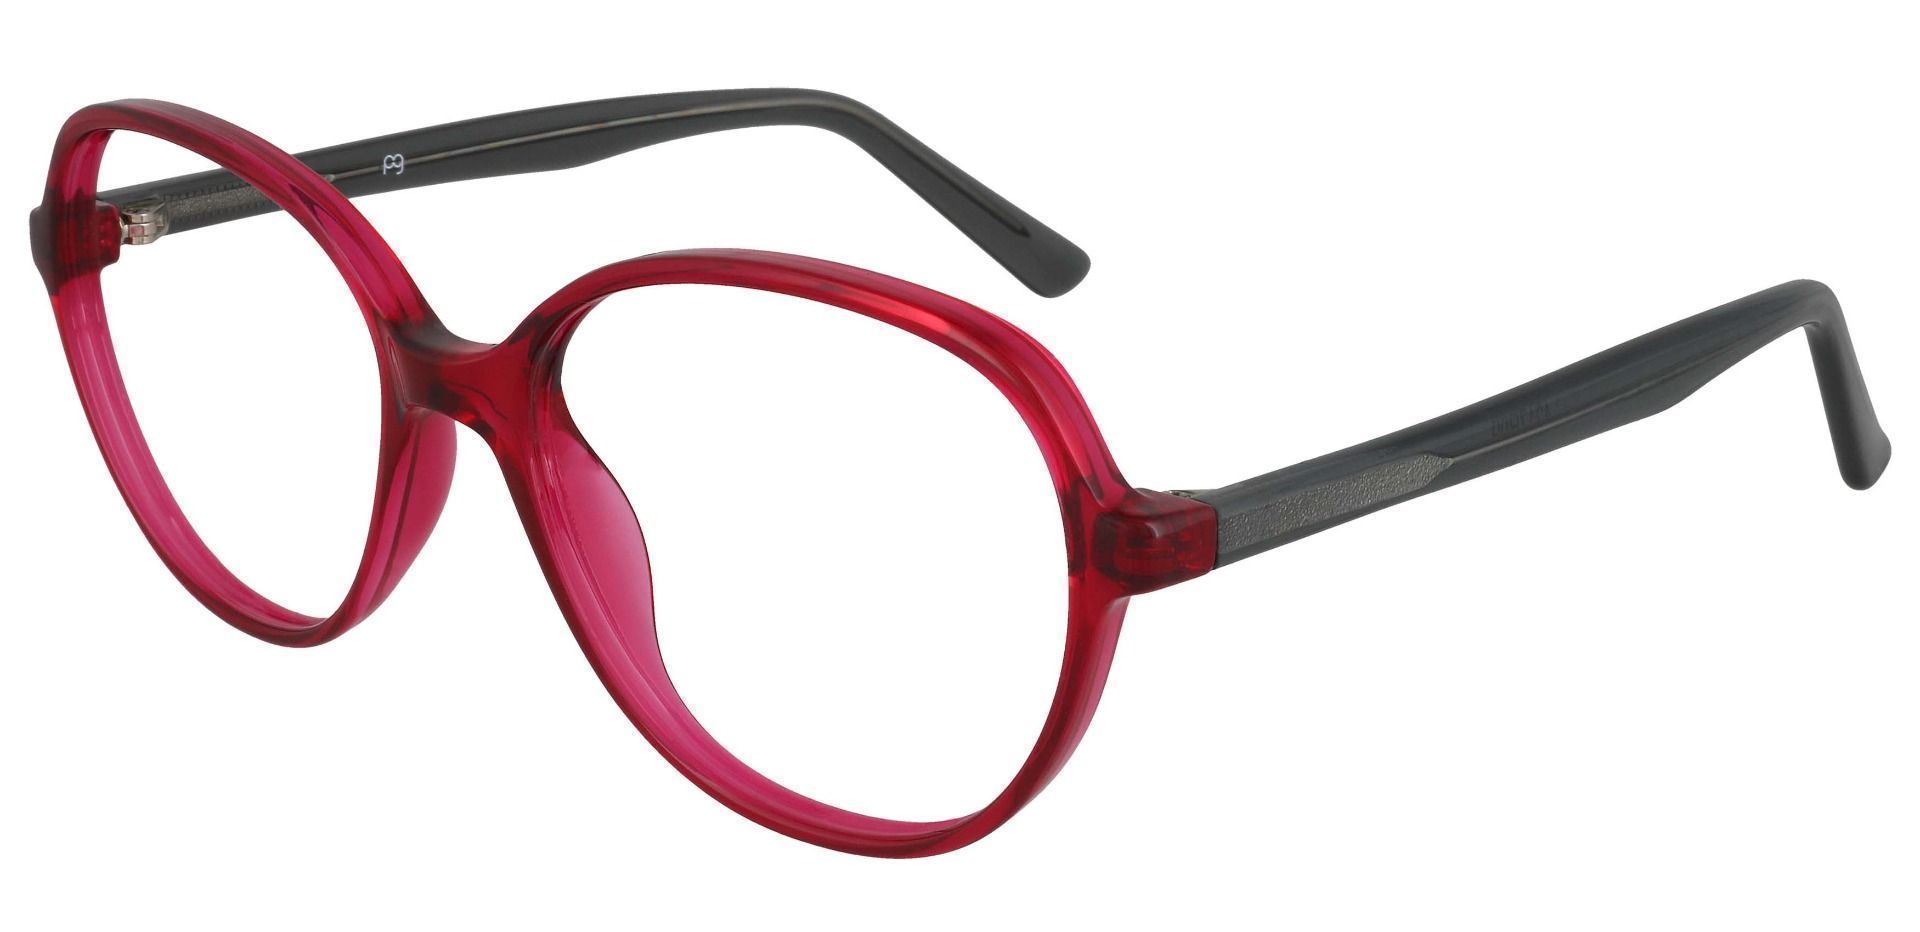 Luella Oval Prescription Glasses - Red